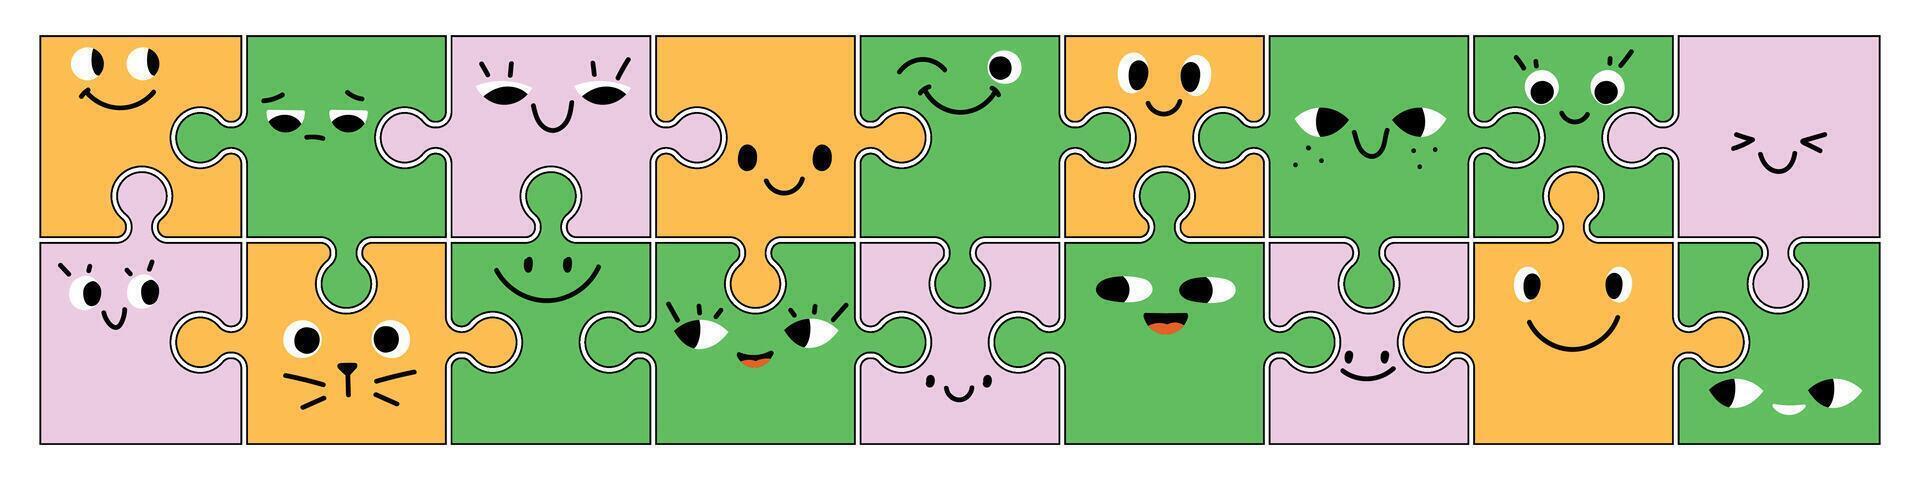 süß Puzzle Charakter mit abstrakt Gesicht, Augen und komisch Ausdruck Emoji. eben Illustration isoliert auf Weiß Hintergrund. vektor